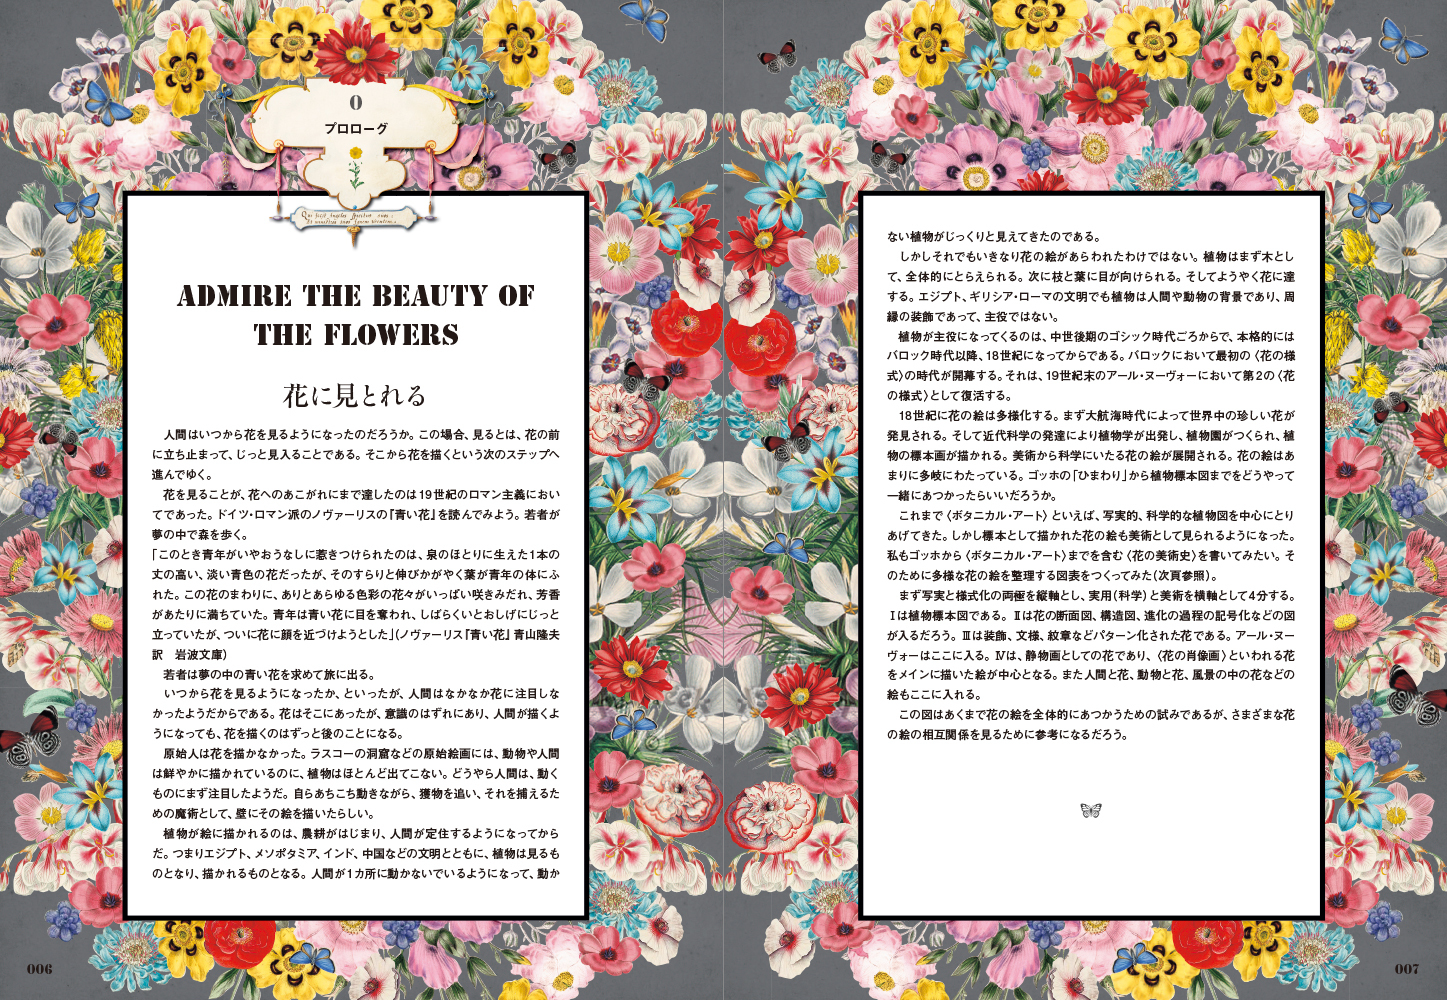 華麗なる花の美術史をたどる 書籍 ヨーロッパの図像 花の美術と物語 が発売に Spice エンタメ特化型情報メディア スパイス